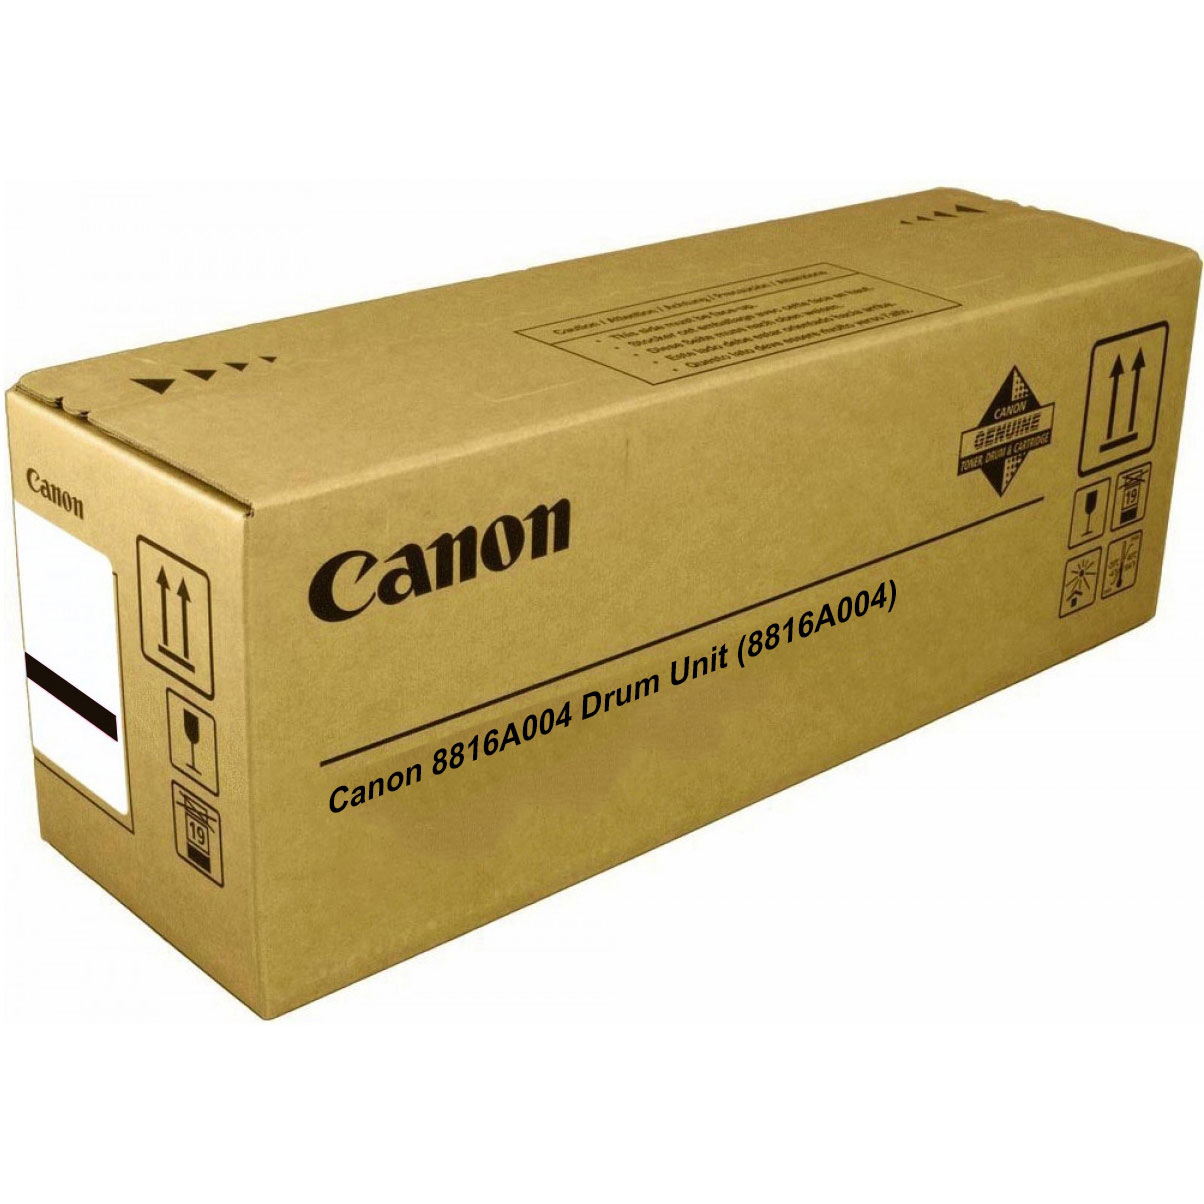 Original Canon 8816A004 Drum Unit (8816A004)